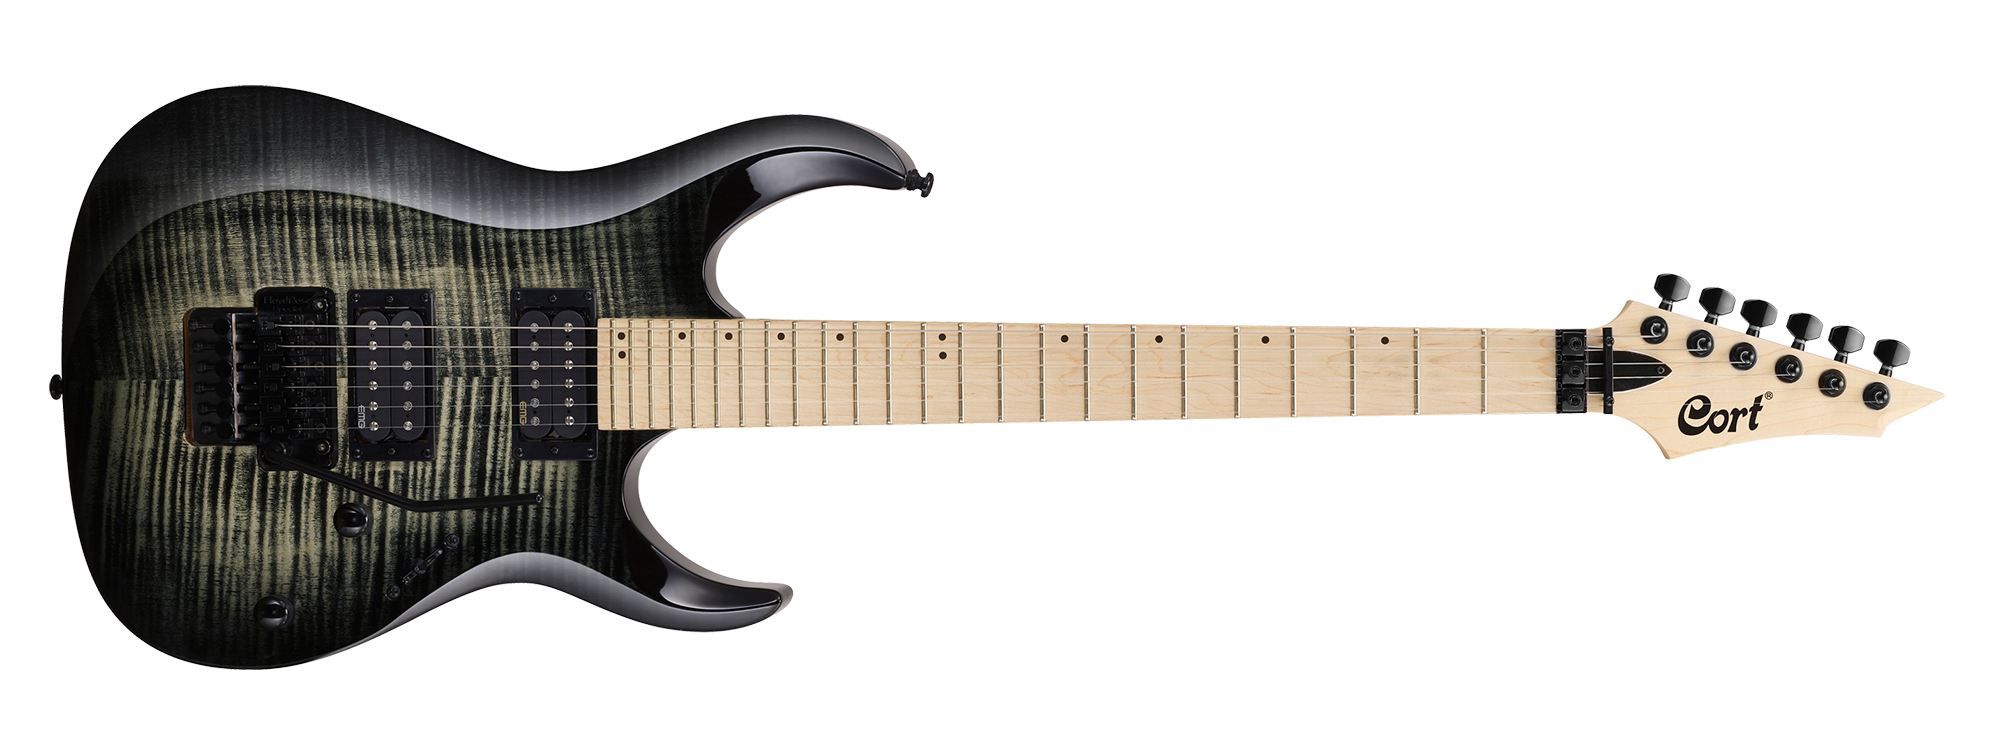 Cort - Guitarra Eléctrica X, Color: Gris Somb. Mod.X300-GRB_37